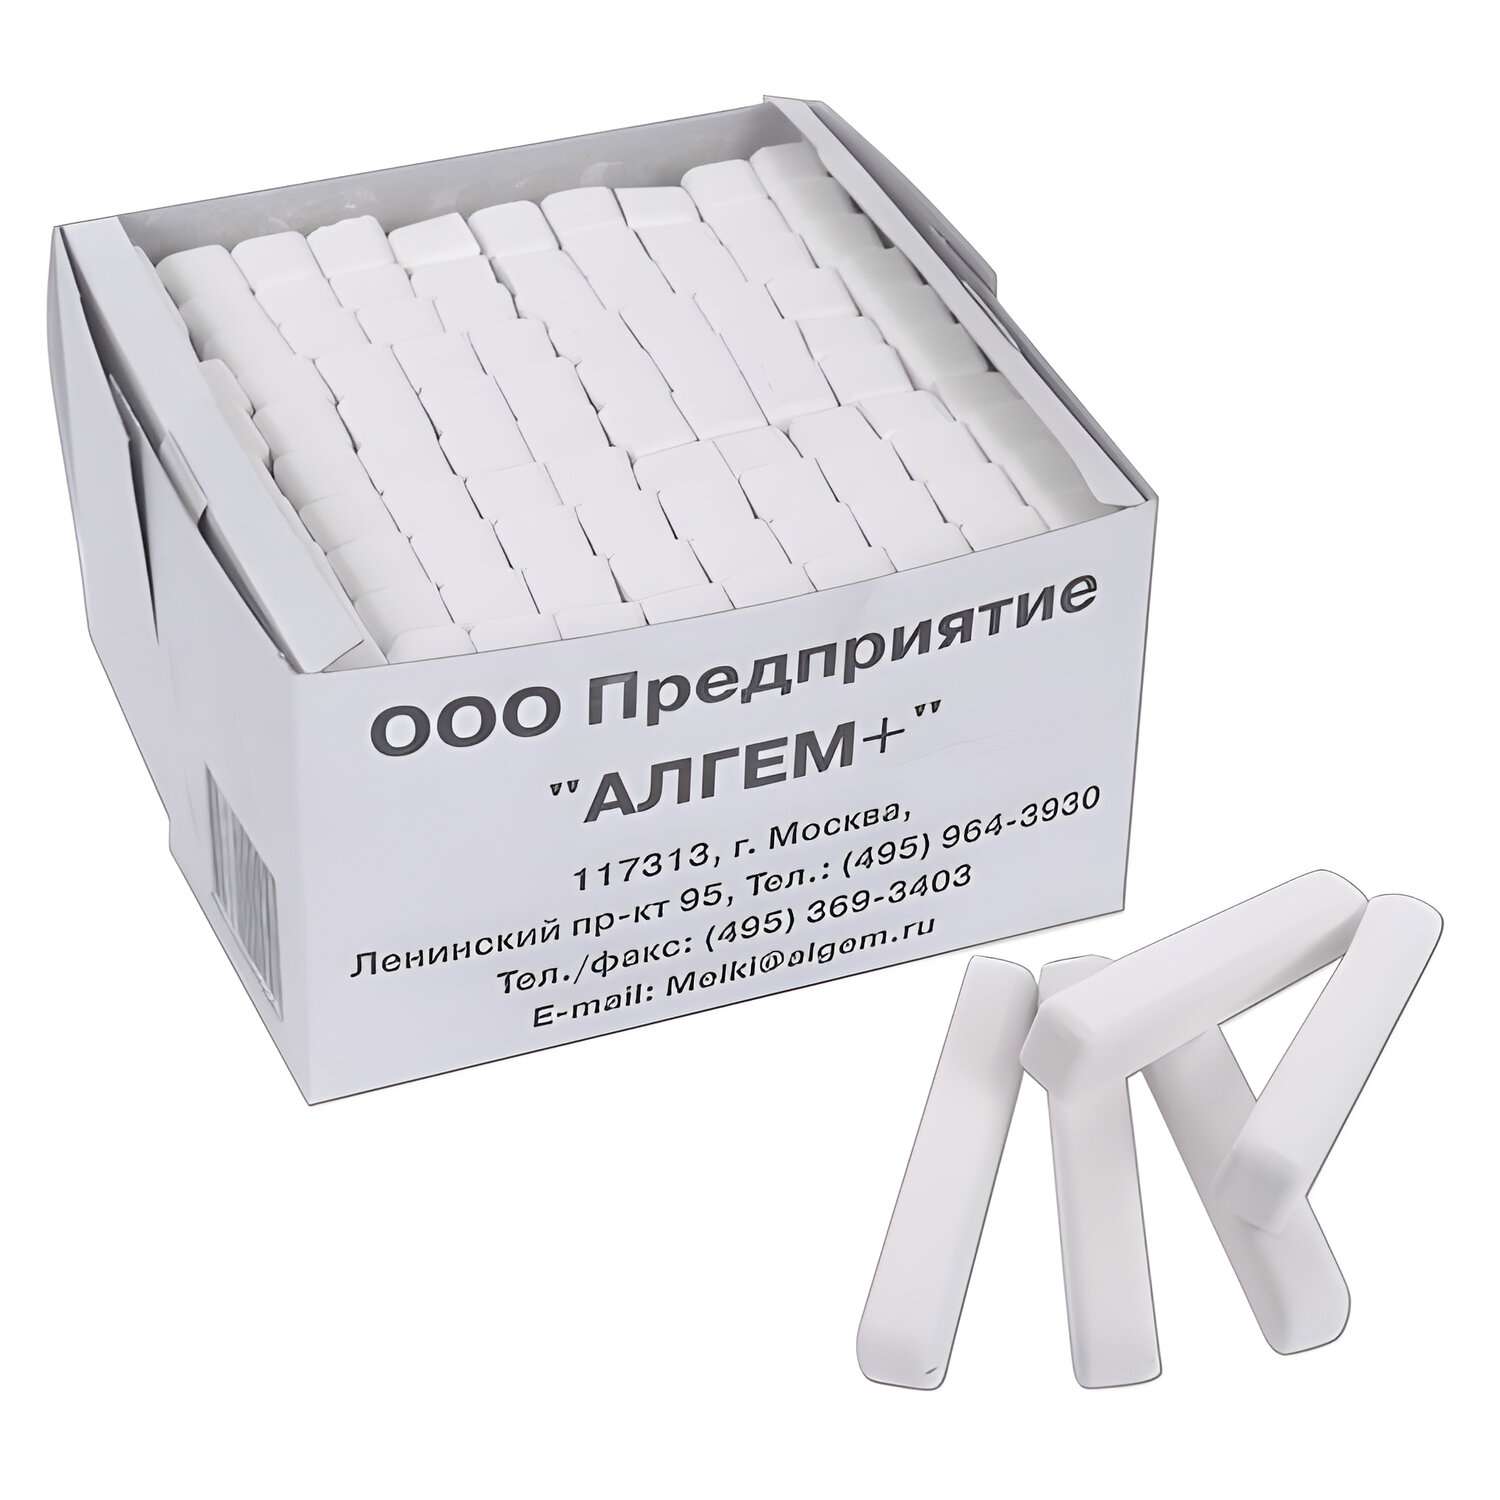 Мел АЛГЕМ белый набор 100 штук для доски школьный квадратный - фото 1